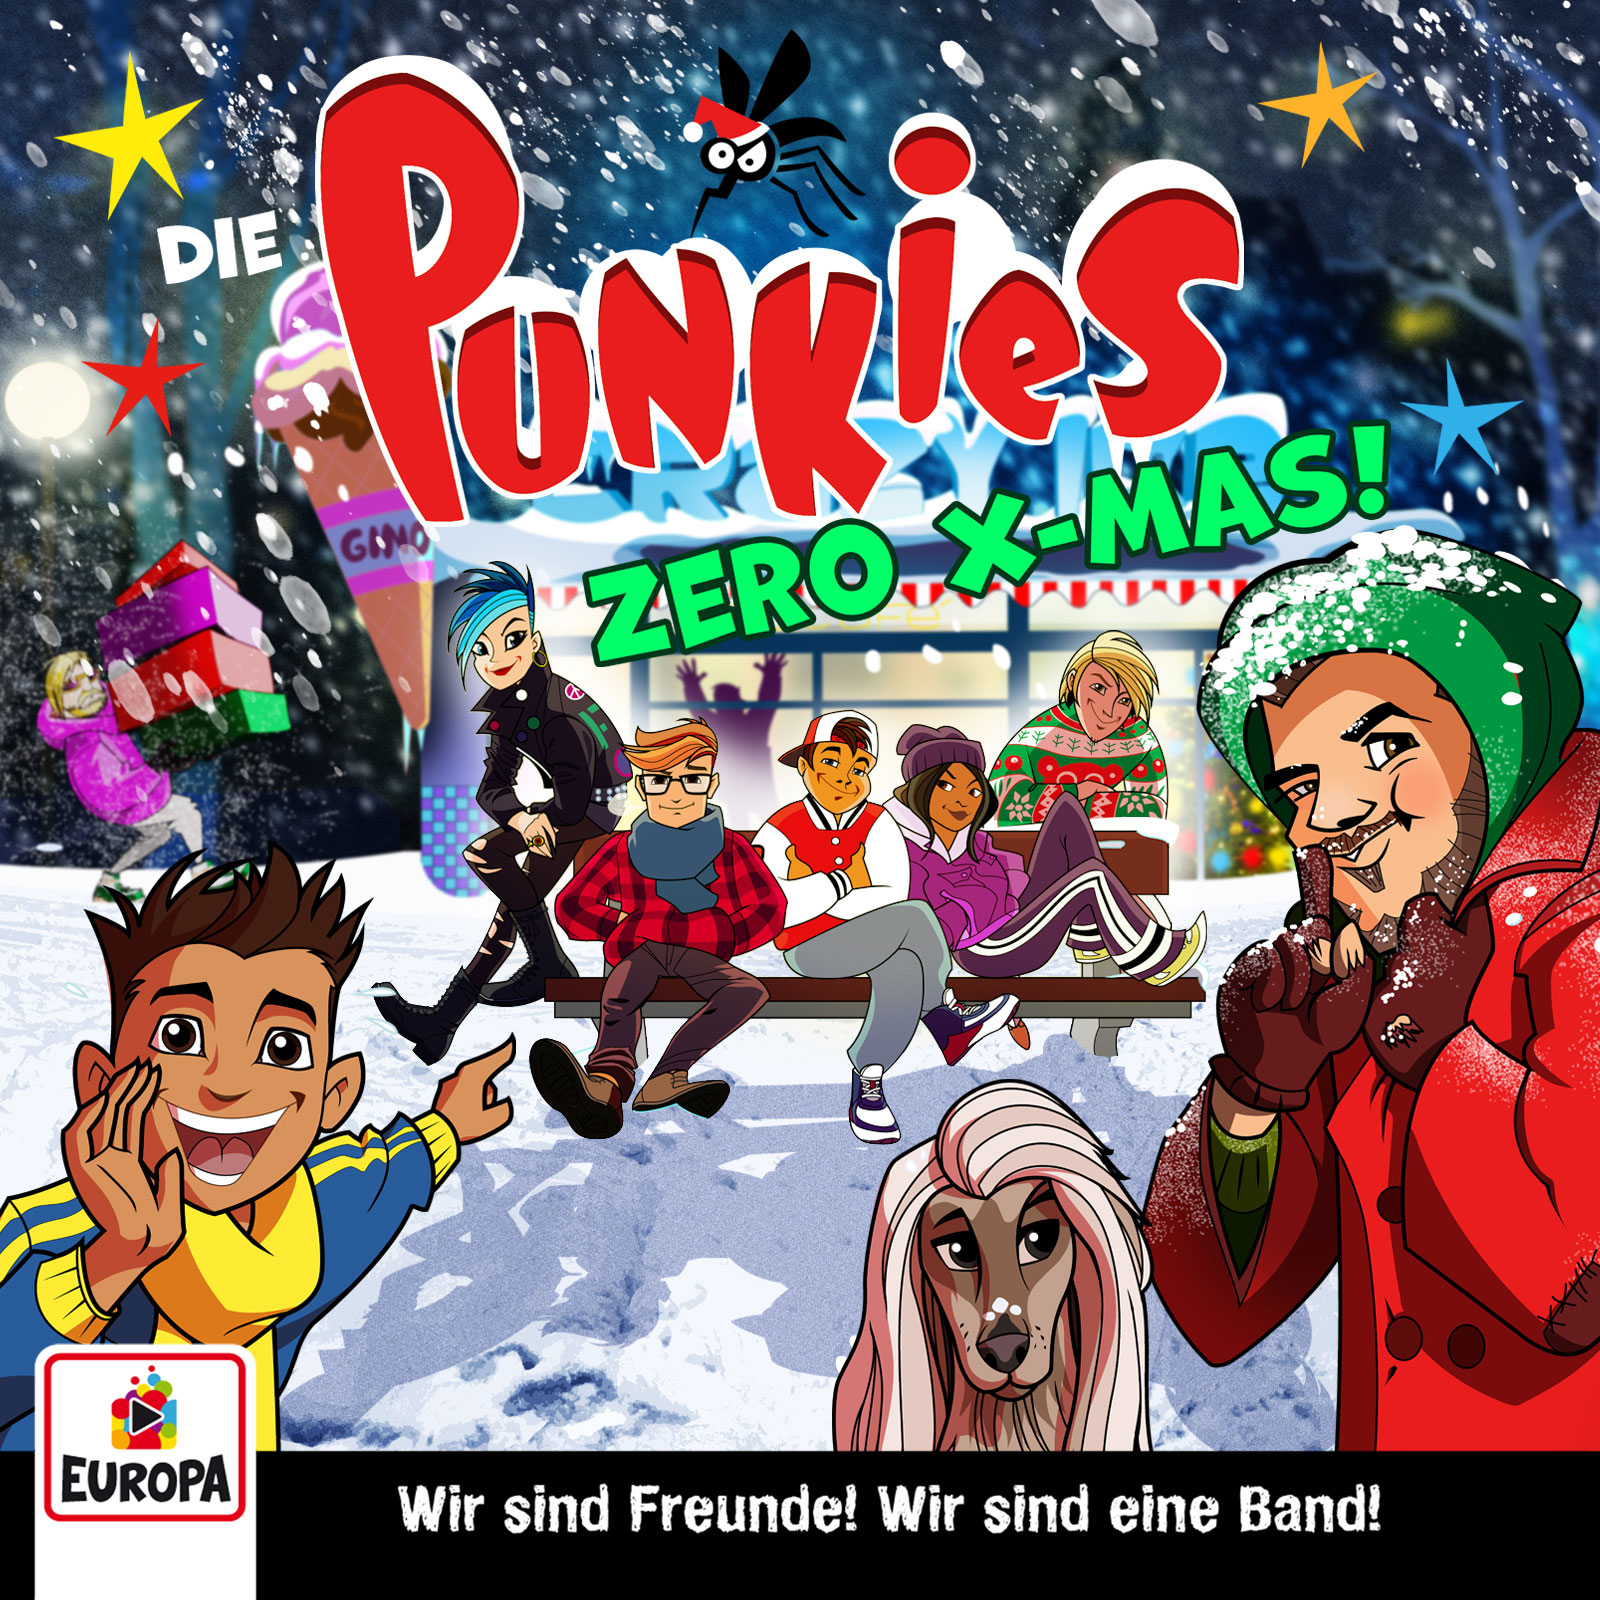 Die Punkies : Zero X-Mas! (Adventskalender) 